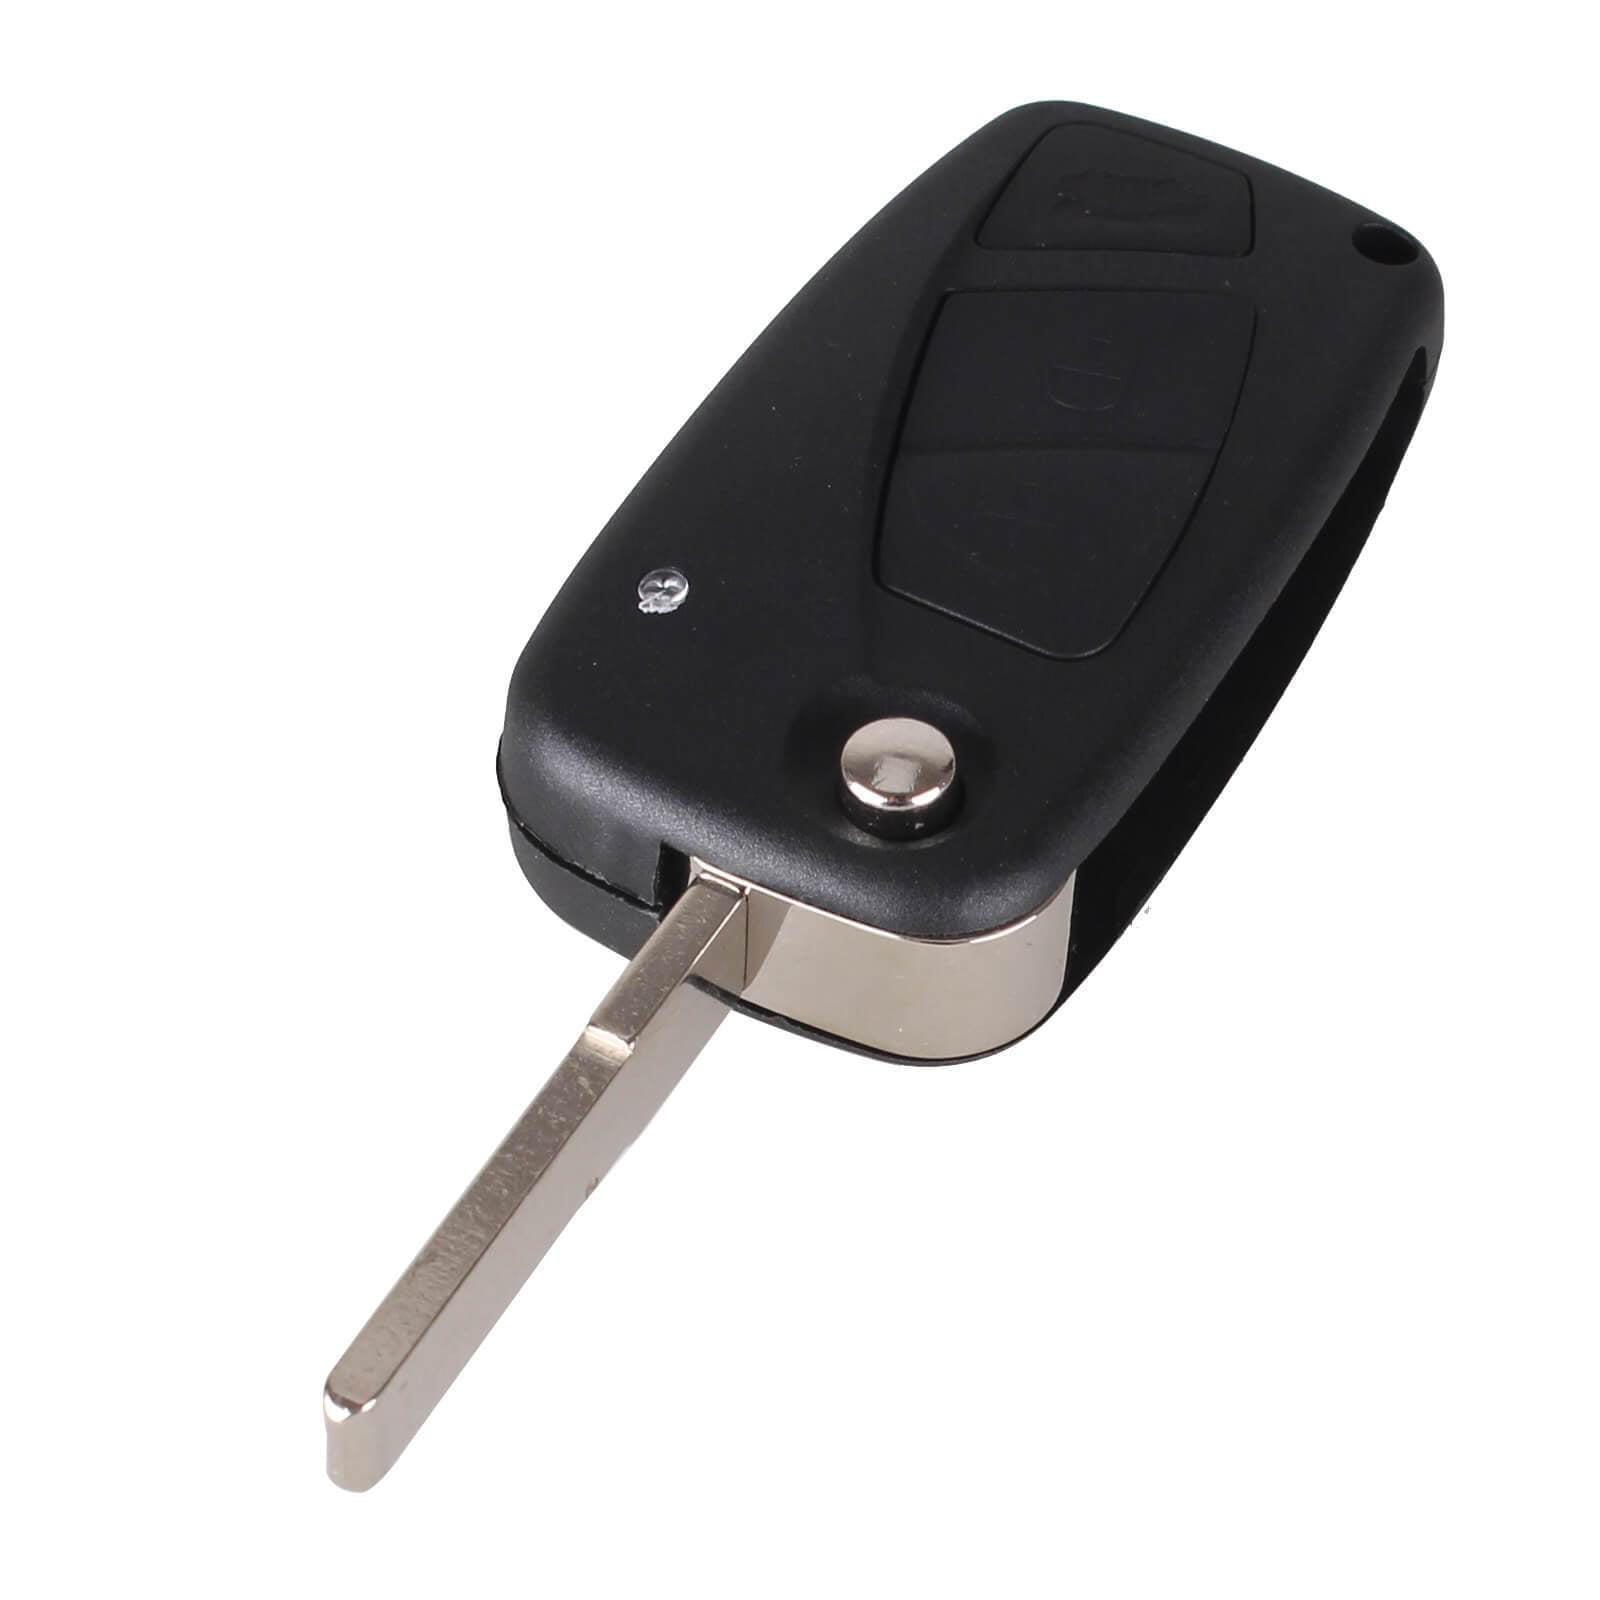 Fekete színű, 3 gombos Peugeot kulcsház, bicskakulcs nyers kulcsszárral.